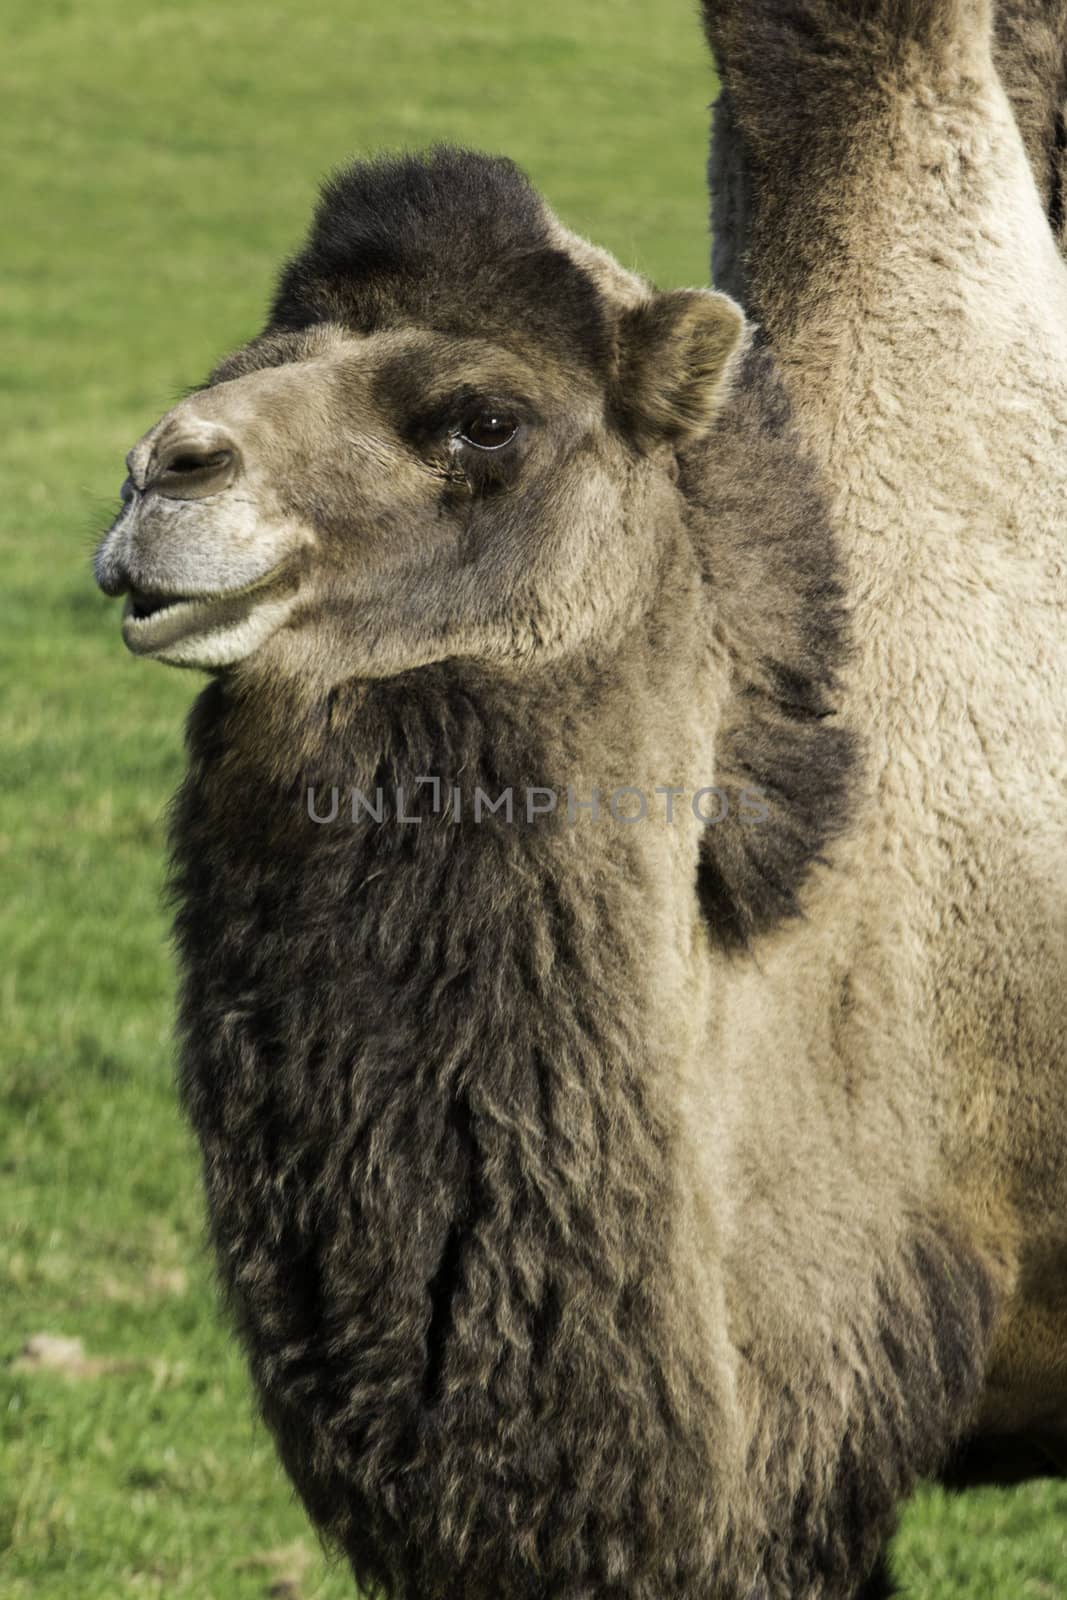 Lone bactrian camel on a farm by jrock635